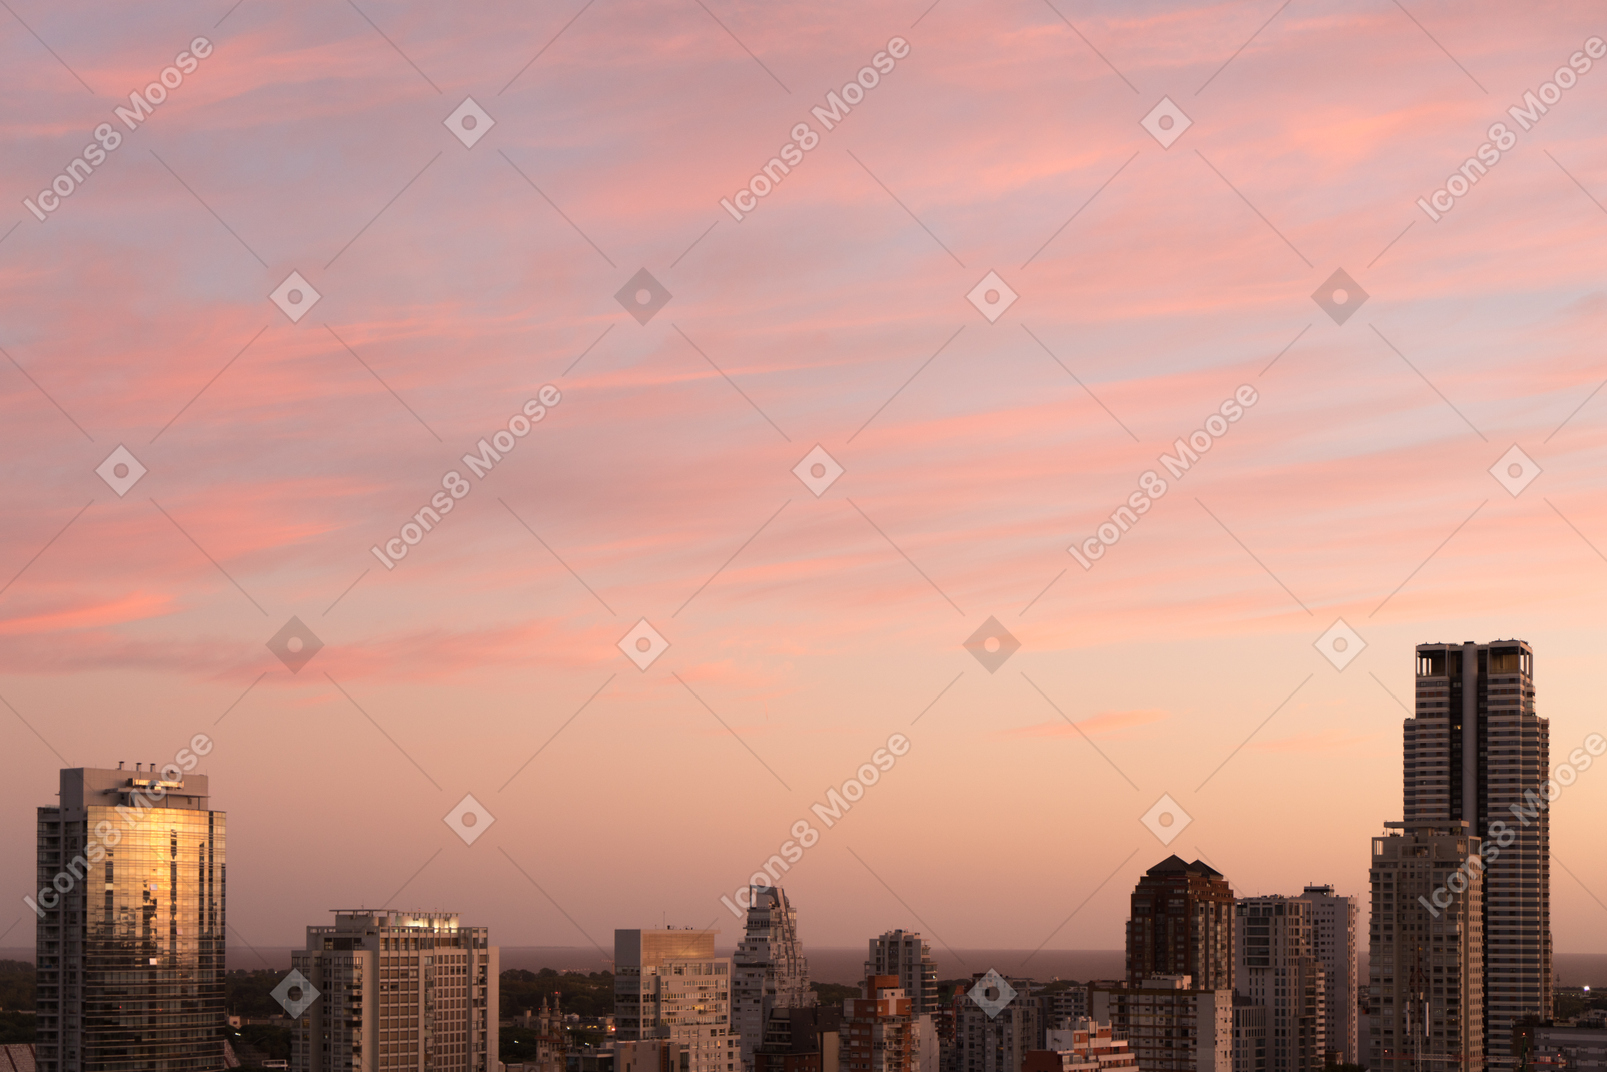 La vista de la ciudad al amanecer rosa